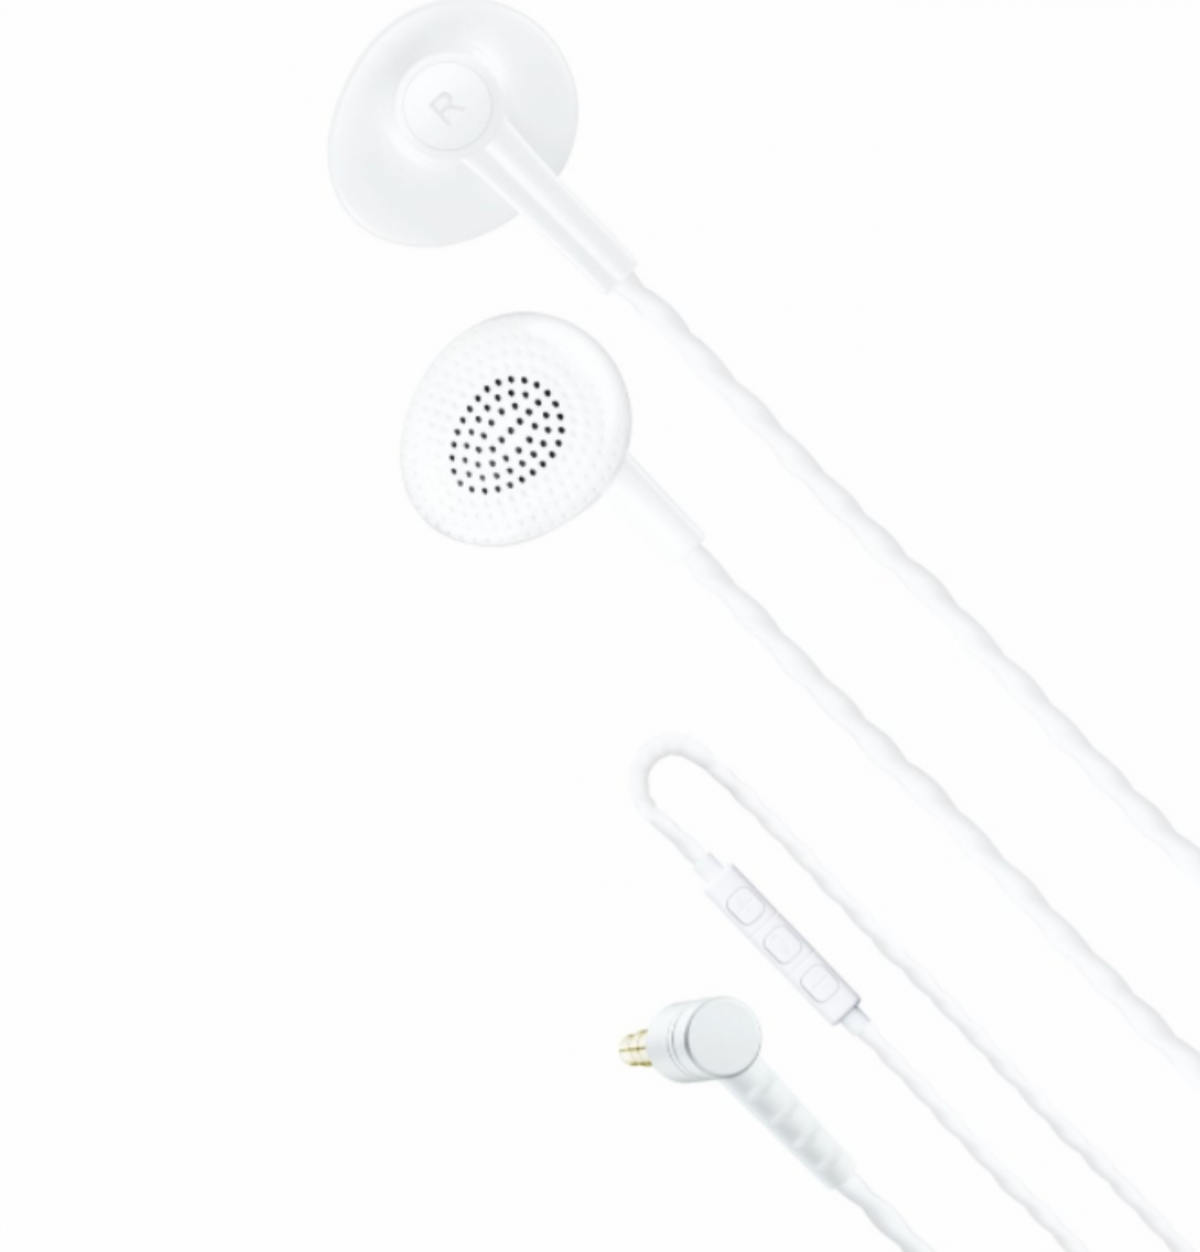 Bonnaire MX-100 平耳佩戴式立體聲音樂和通話耳機 (白色) MX-100w